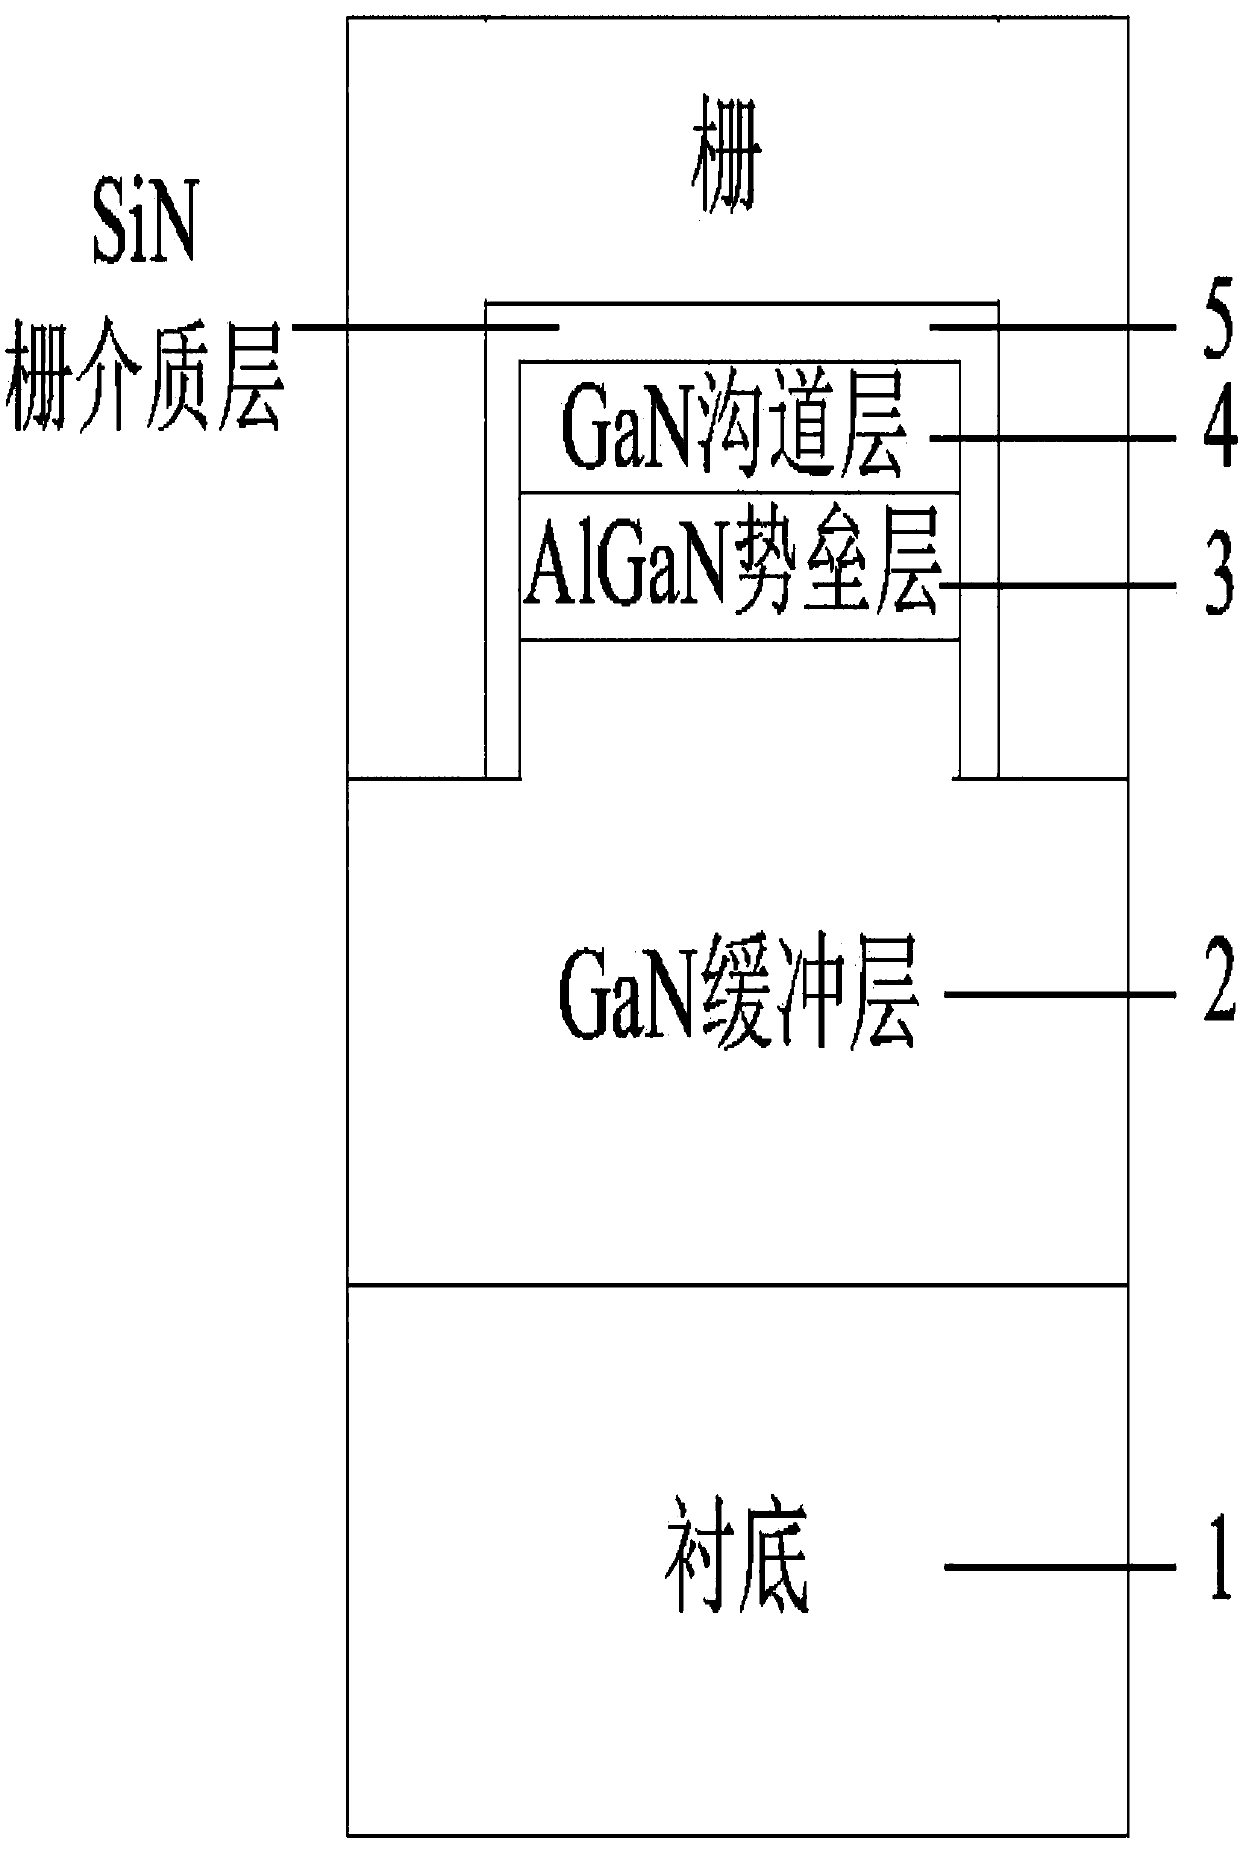 T-gate N-plane GaN/AlGaN fin high electron mobility transistor